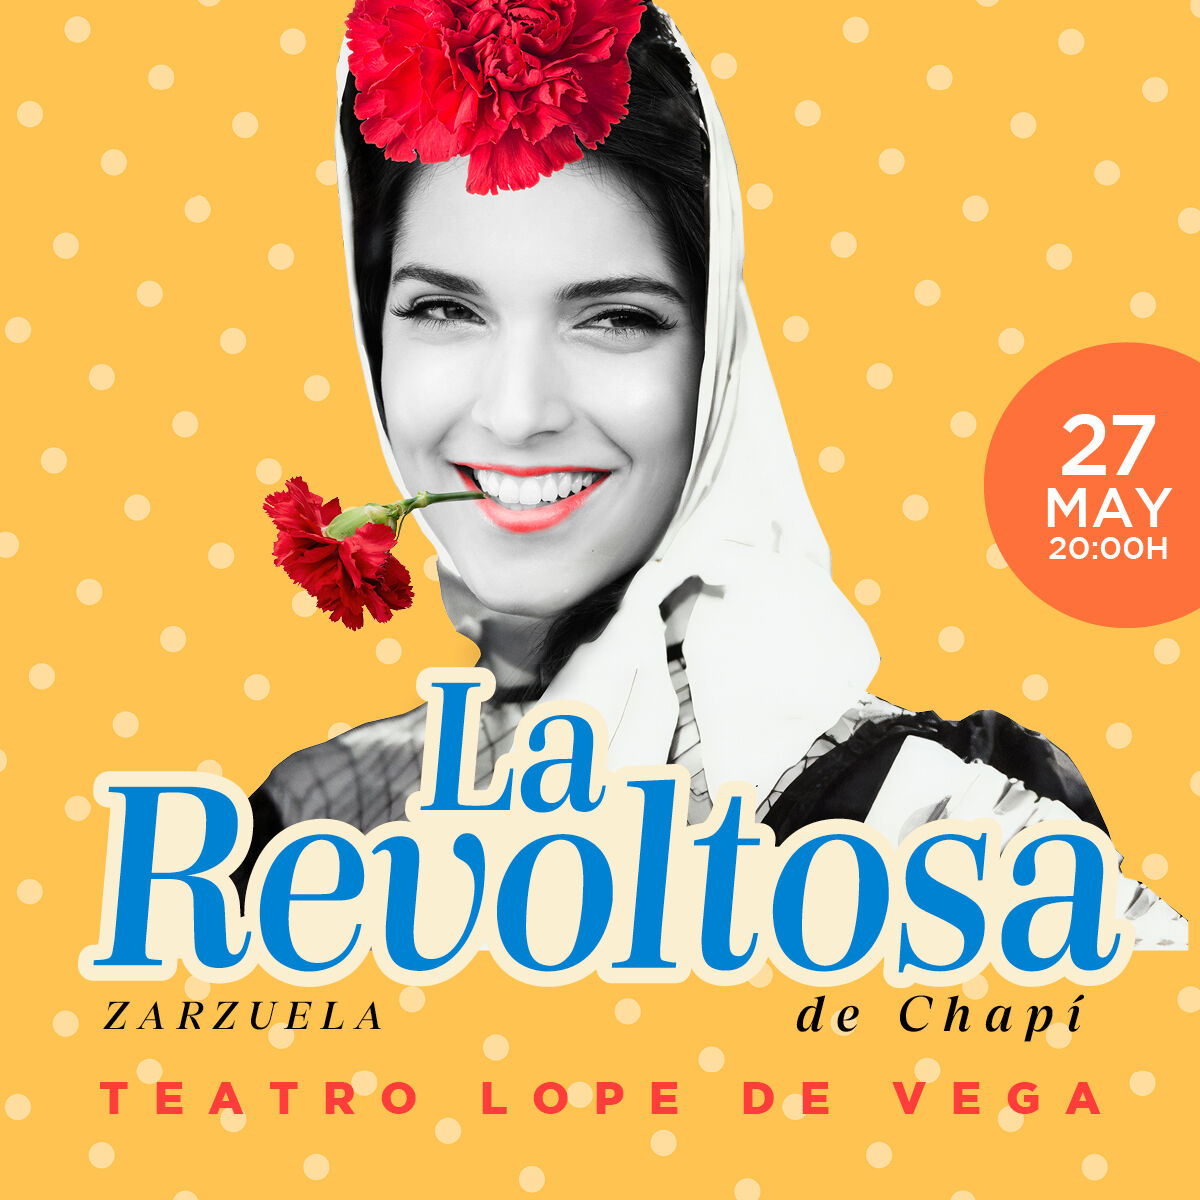 El 27 de mayo a las 20:00h en el Teatro Lope de Vega de #Madrid, 𝗭𝗮𝗿𝘇𝘂𝗲𝗹𝗮: «𝗟𝗮 𝗥𝗲𝘃𝗼𝗹𝘁𝗼𝘀𝗮».

Sociedad Coral Excelentia de Madrid
Orquesta Clásica Santa Cecilia

𝗠𝗮́𝘀 𝗶𝗻𝗳𝗼𝗿𝗺𝗮𝗰𝗶𝗼́𝗻 𝘆 𝗲𝗻𝘁𝗿𝗮𝗱𝗮𝘀: fundacionexcelentia.org/27052024-zarzu…